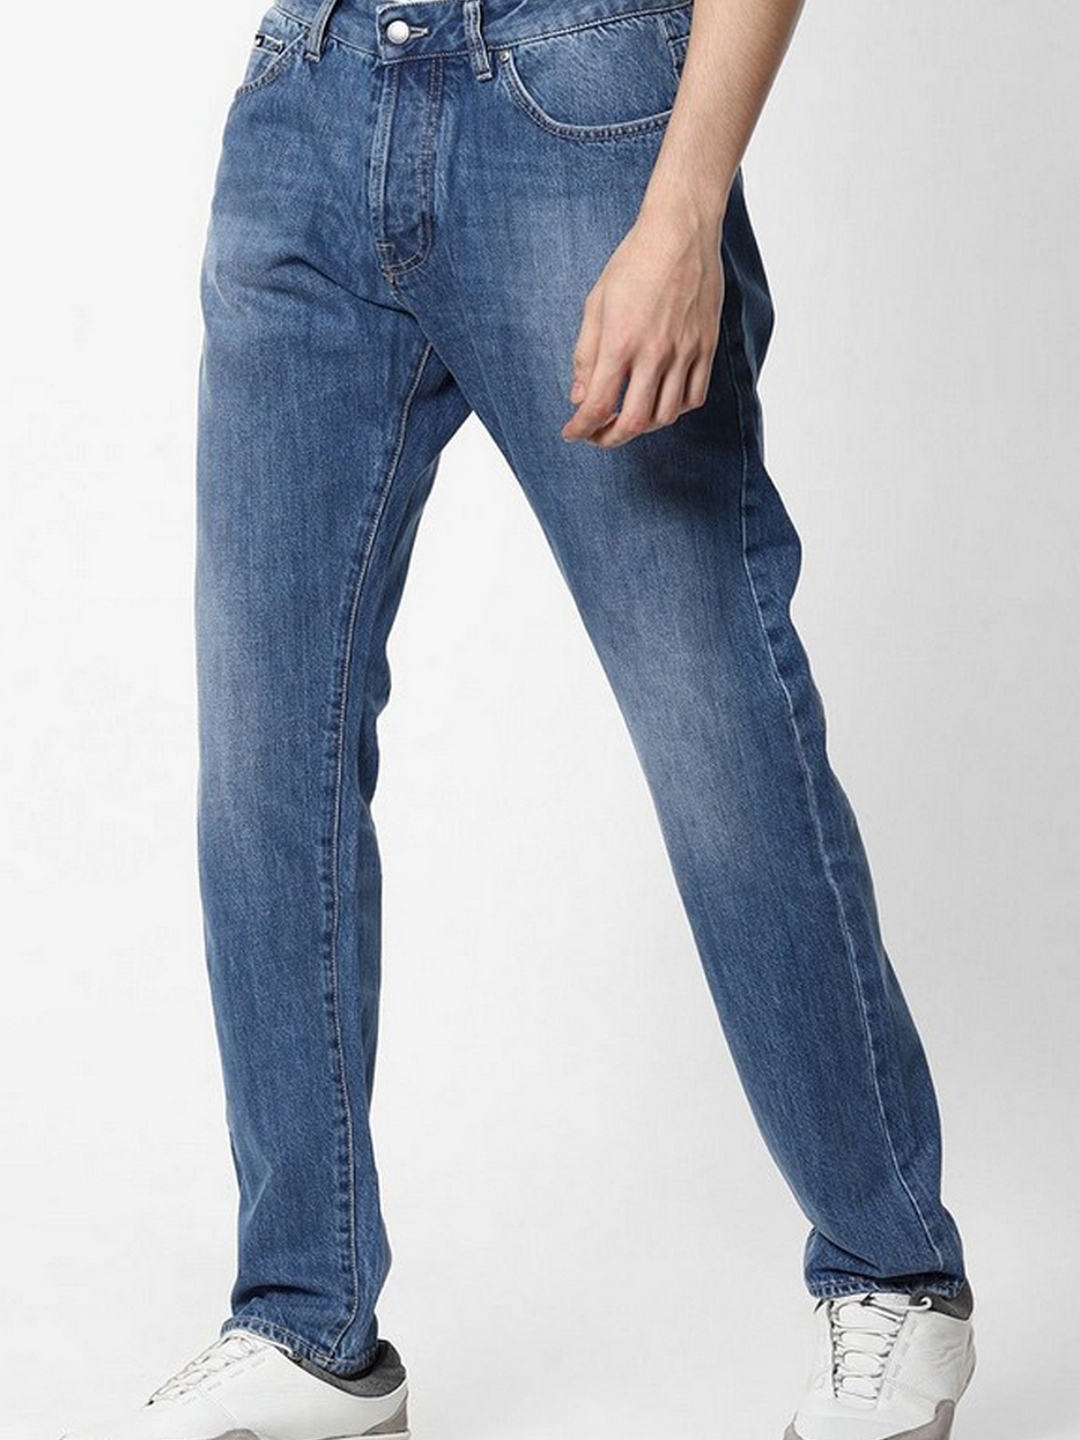 Men's denim pants CARROT FIT - black V3 OM-PADP-0117 | Ombre.com - Men's  clothing online